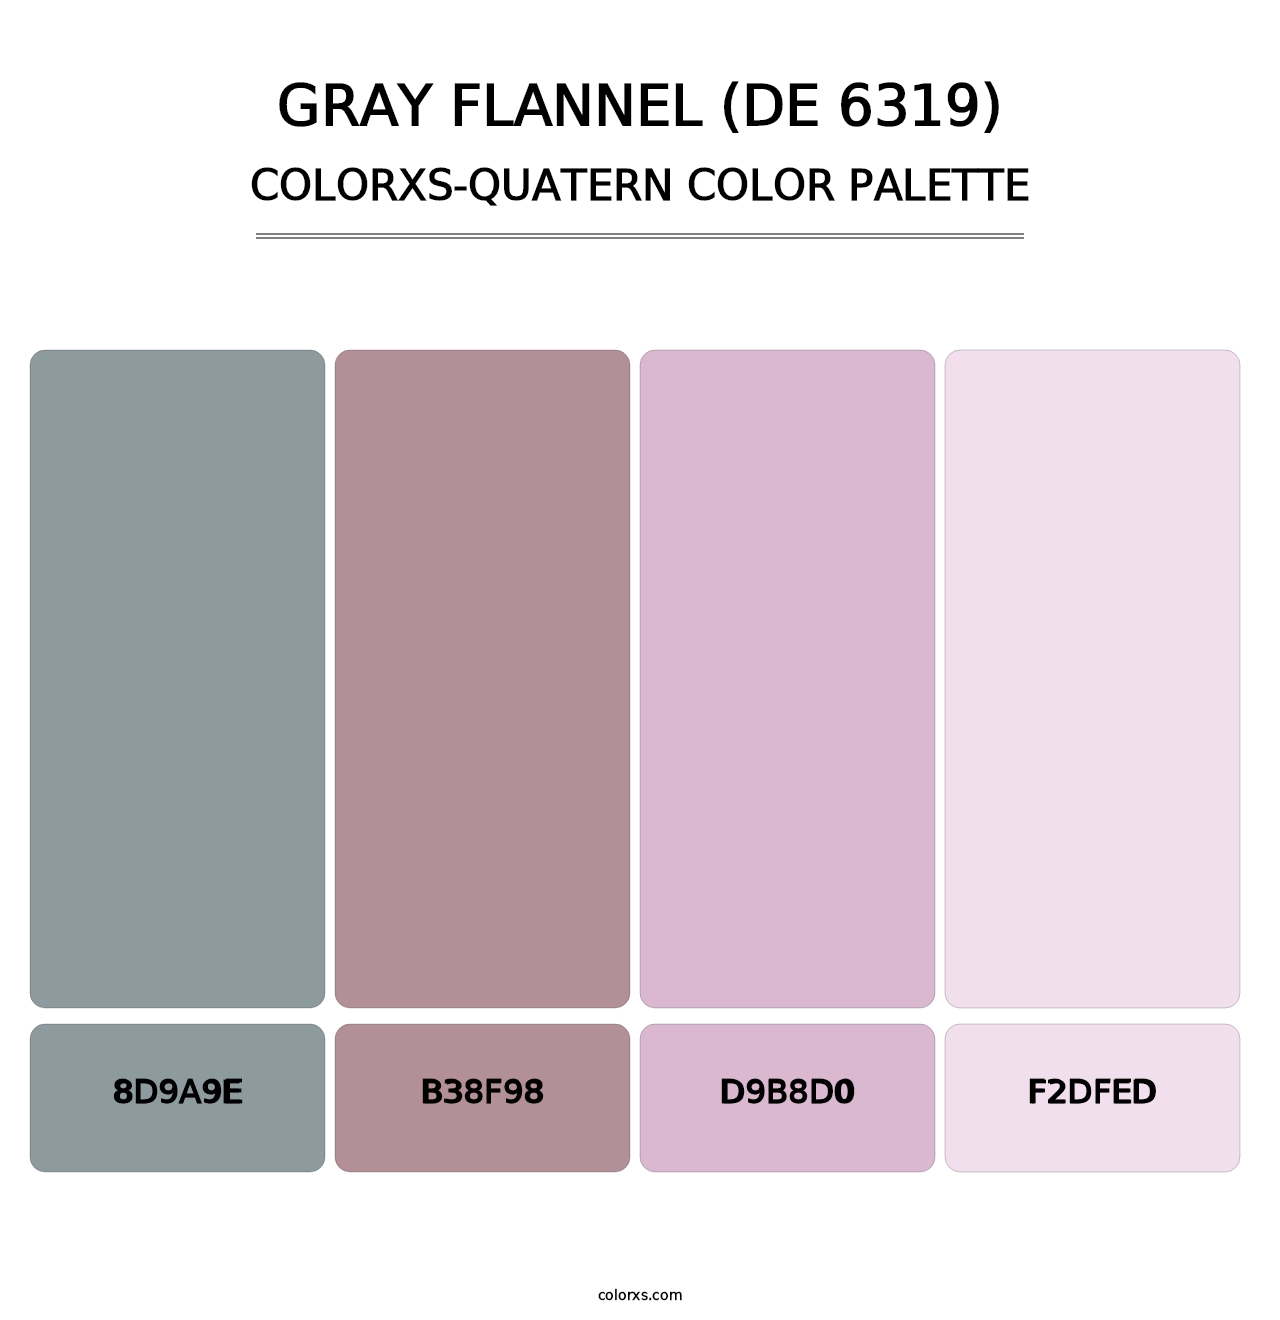 Gray Flannel (DE 6319) - Colorxs Quatern Palette